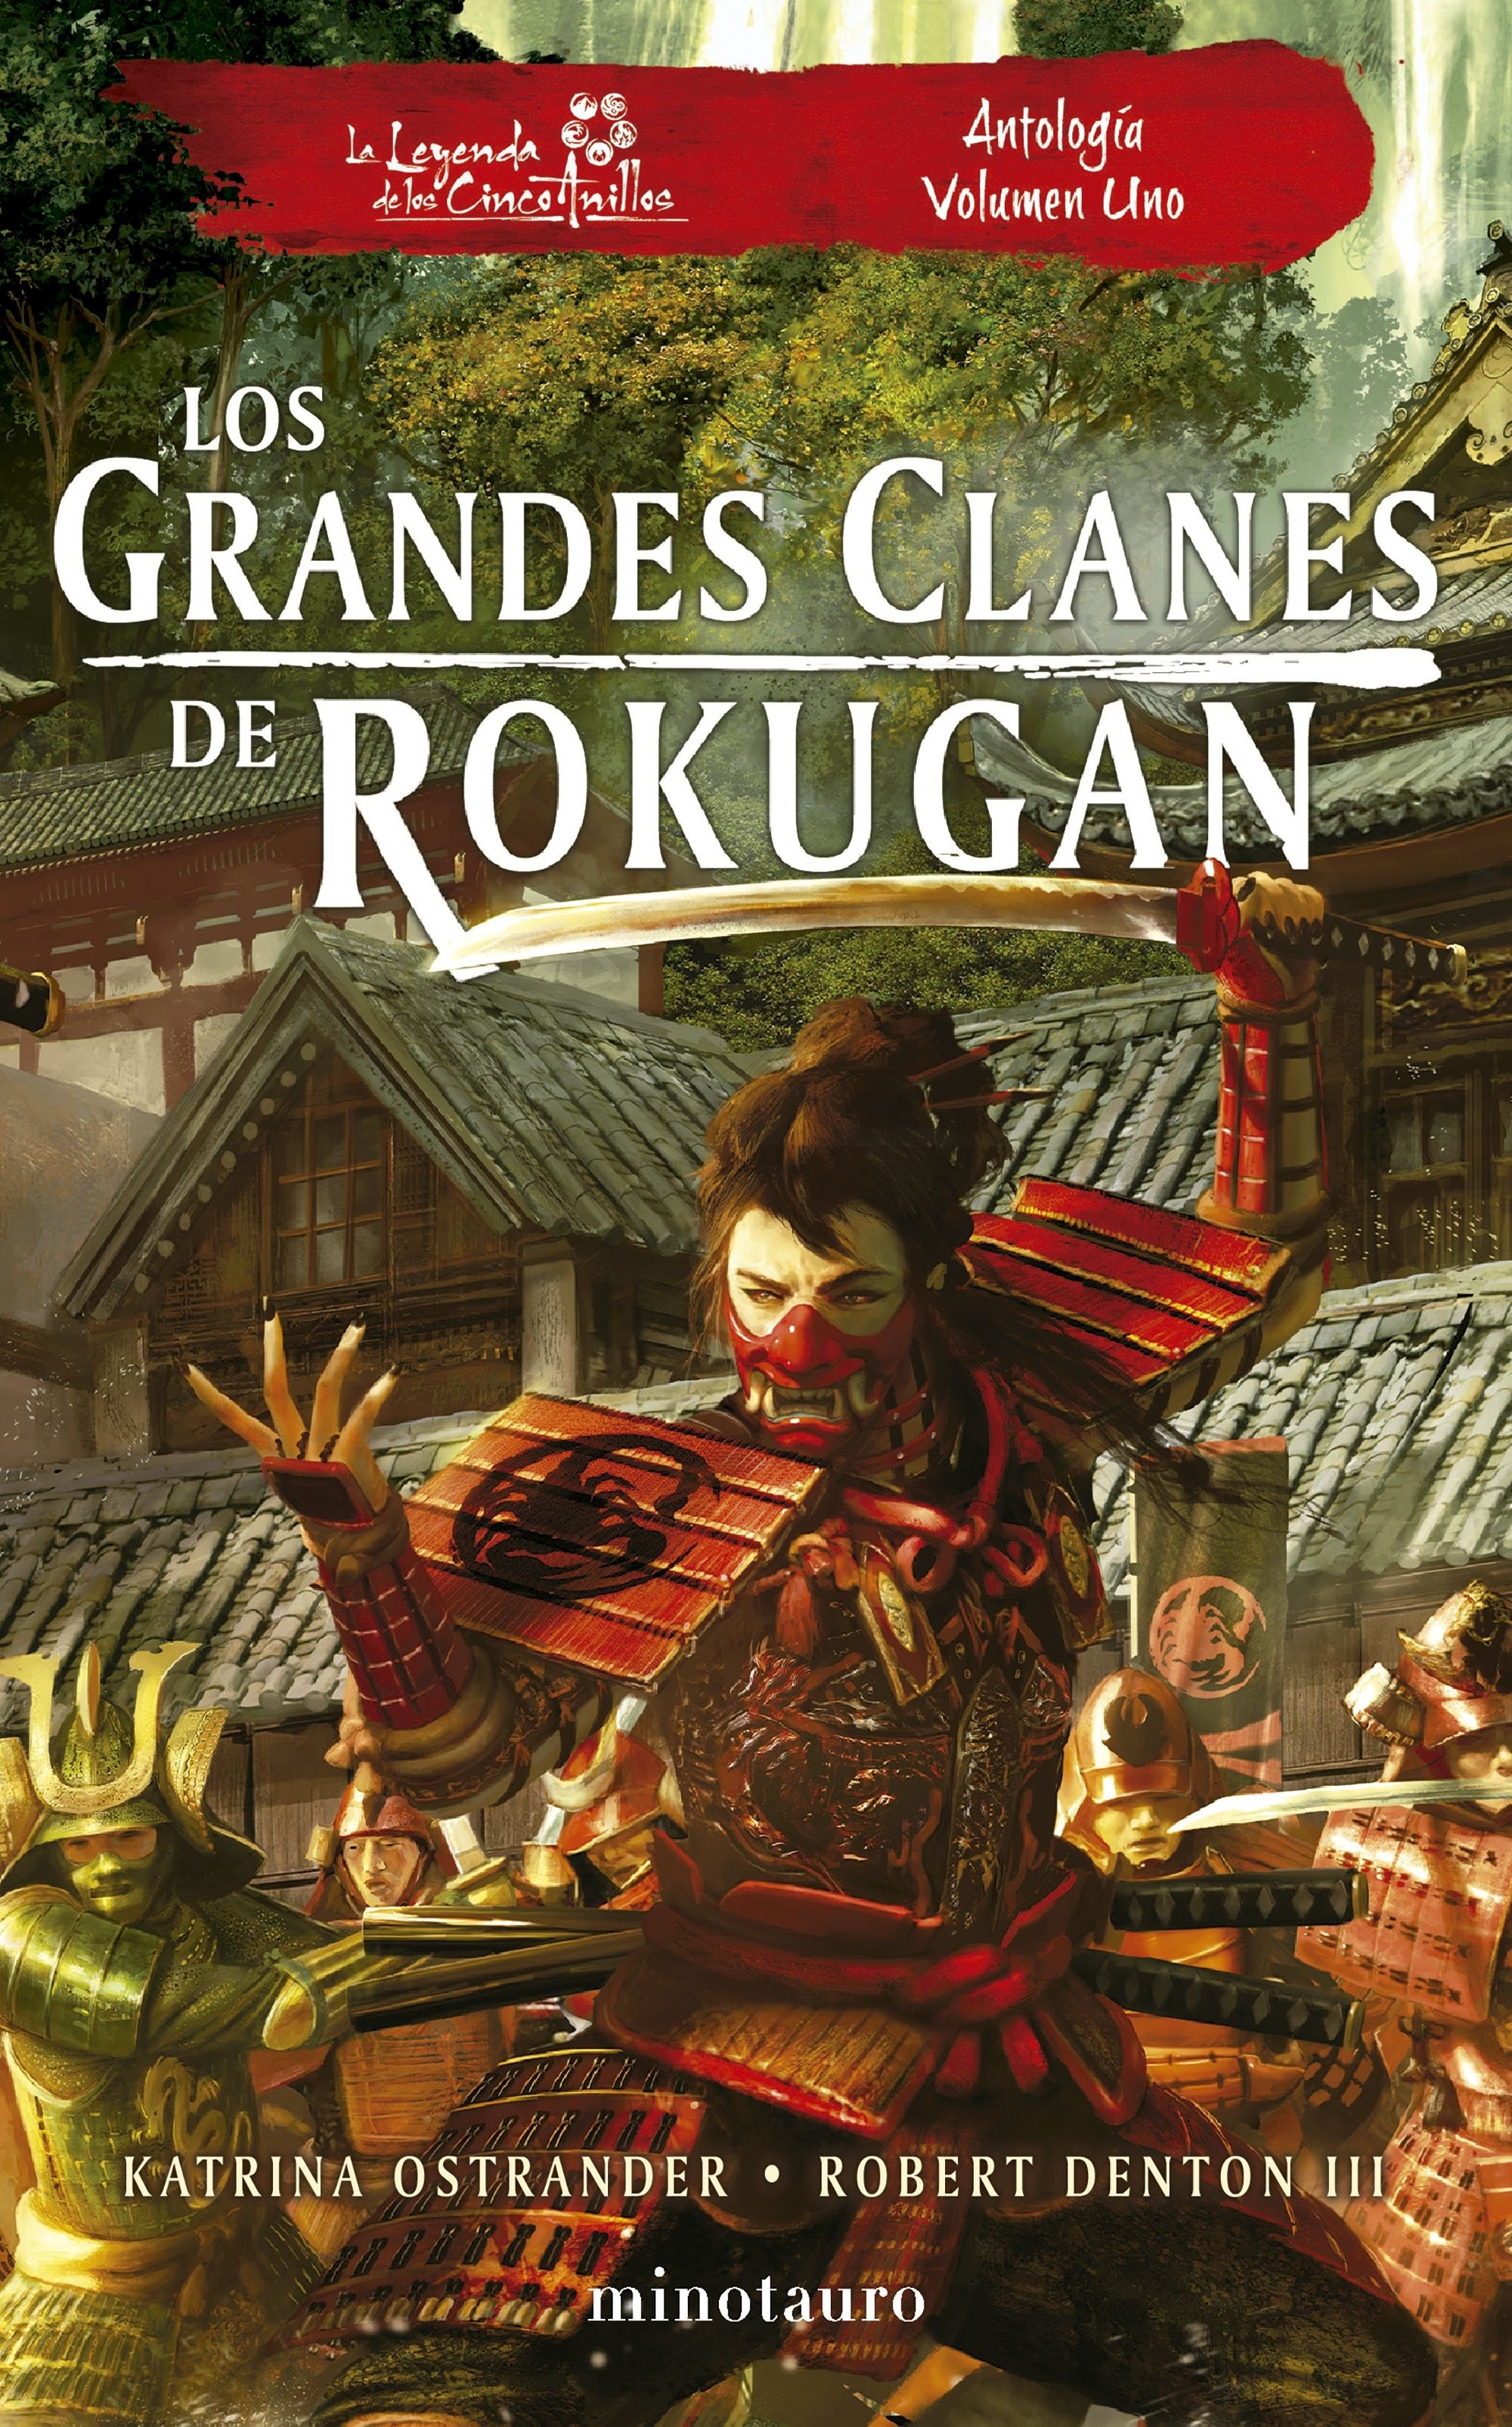 Los grandes clanes de Rokugan. Antología volumen uno. 